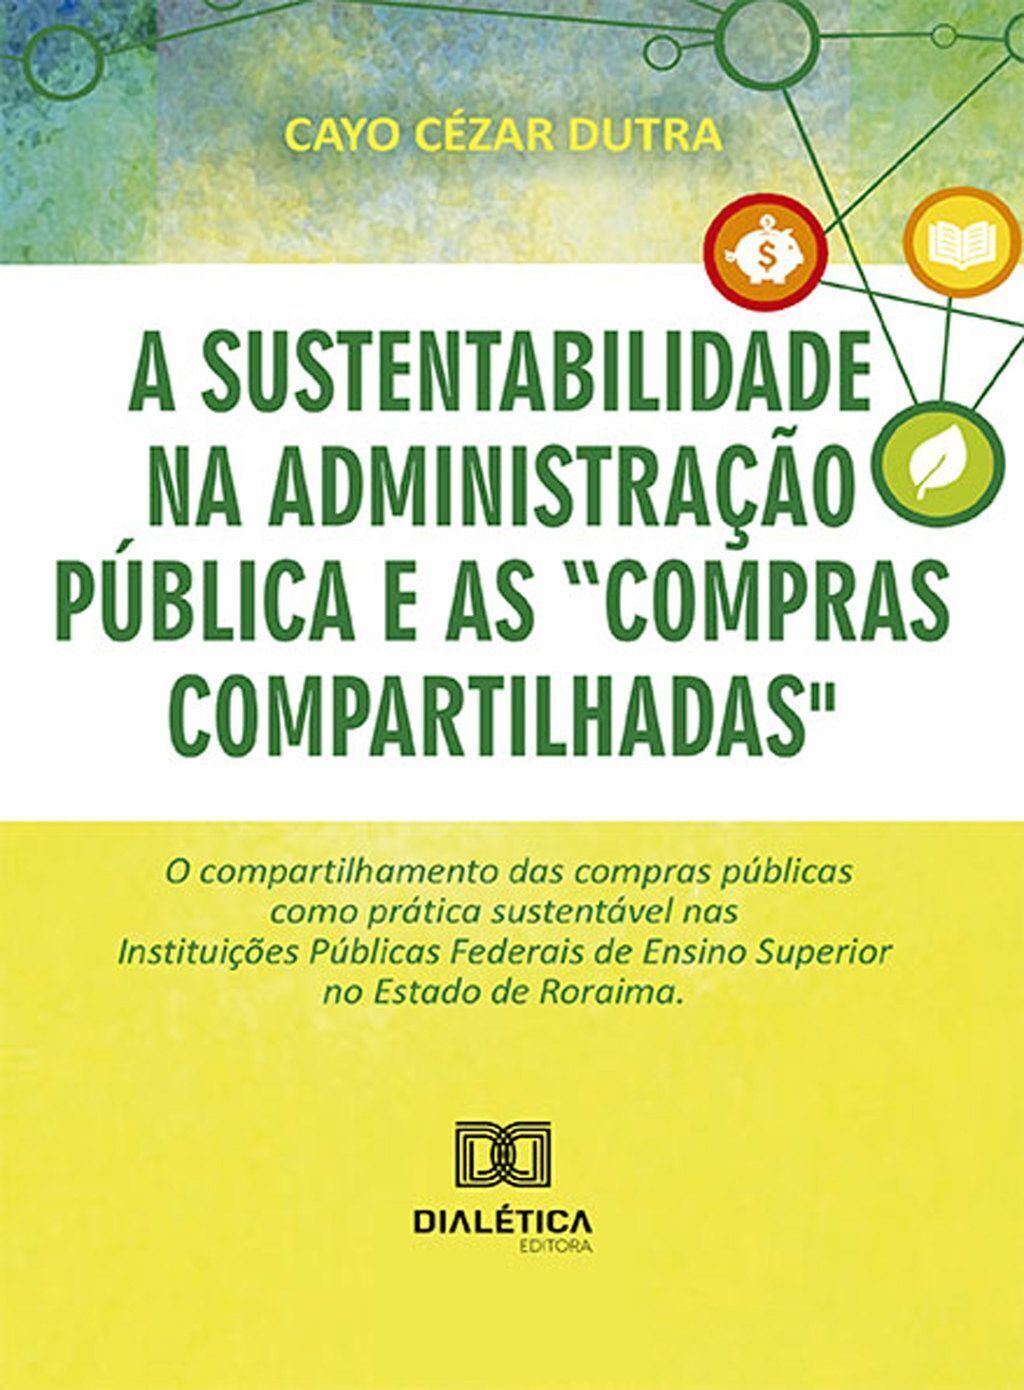 A sustentabilidade na administração pública e as "compras compartilhadas"